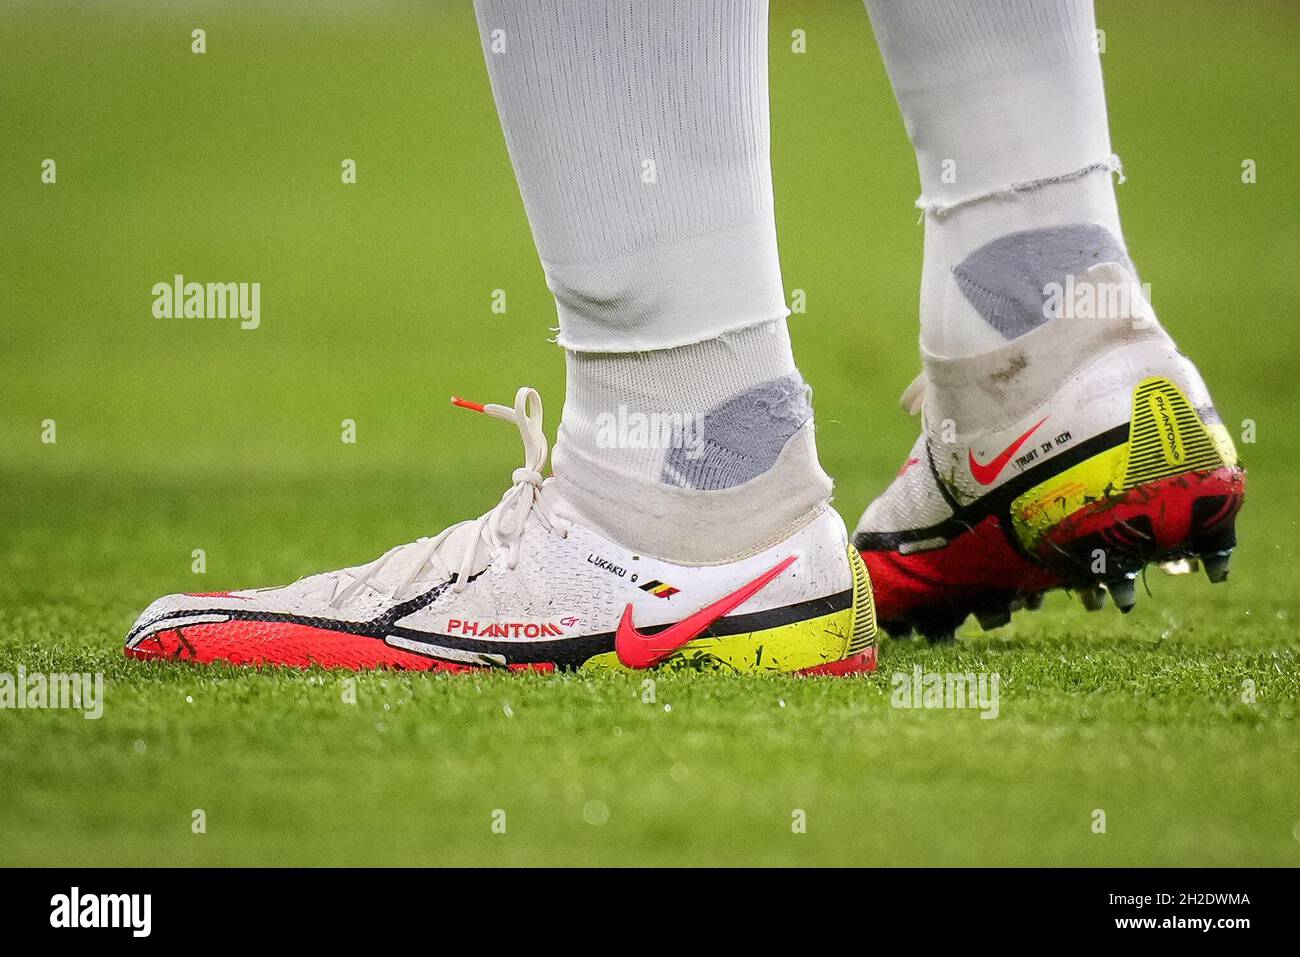 Londra, Regno Unito. 20 Ott 2021. Le scarpe da calcio Nike Phantom  personalizzate di Romelu Lukaku di Chelsea che espongono LUKAKU 9 e la  bandiera belga durante la partita della UEFA Champions